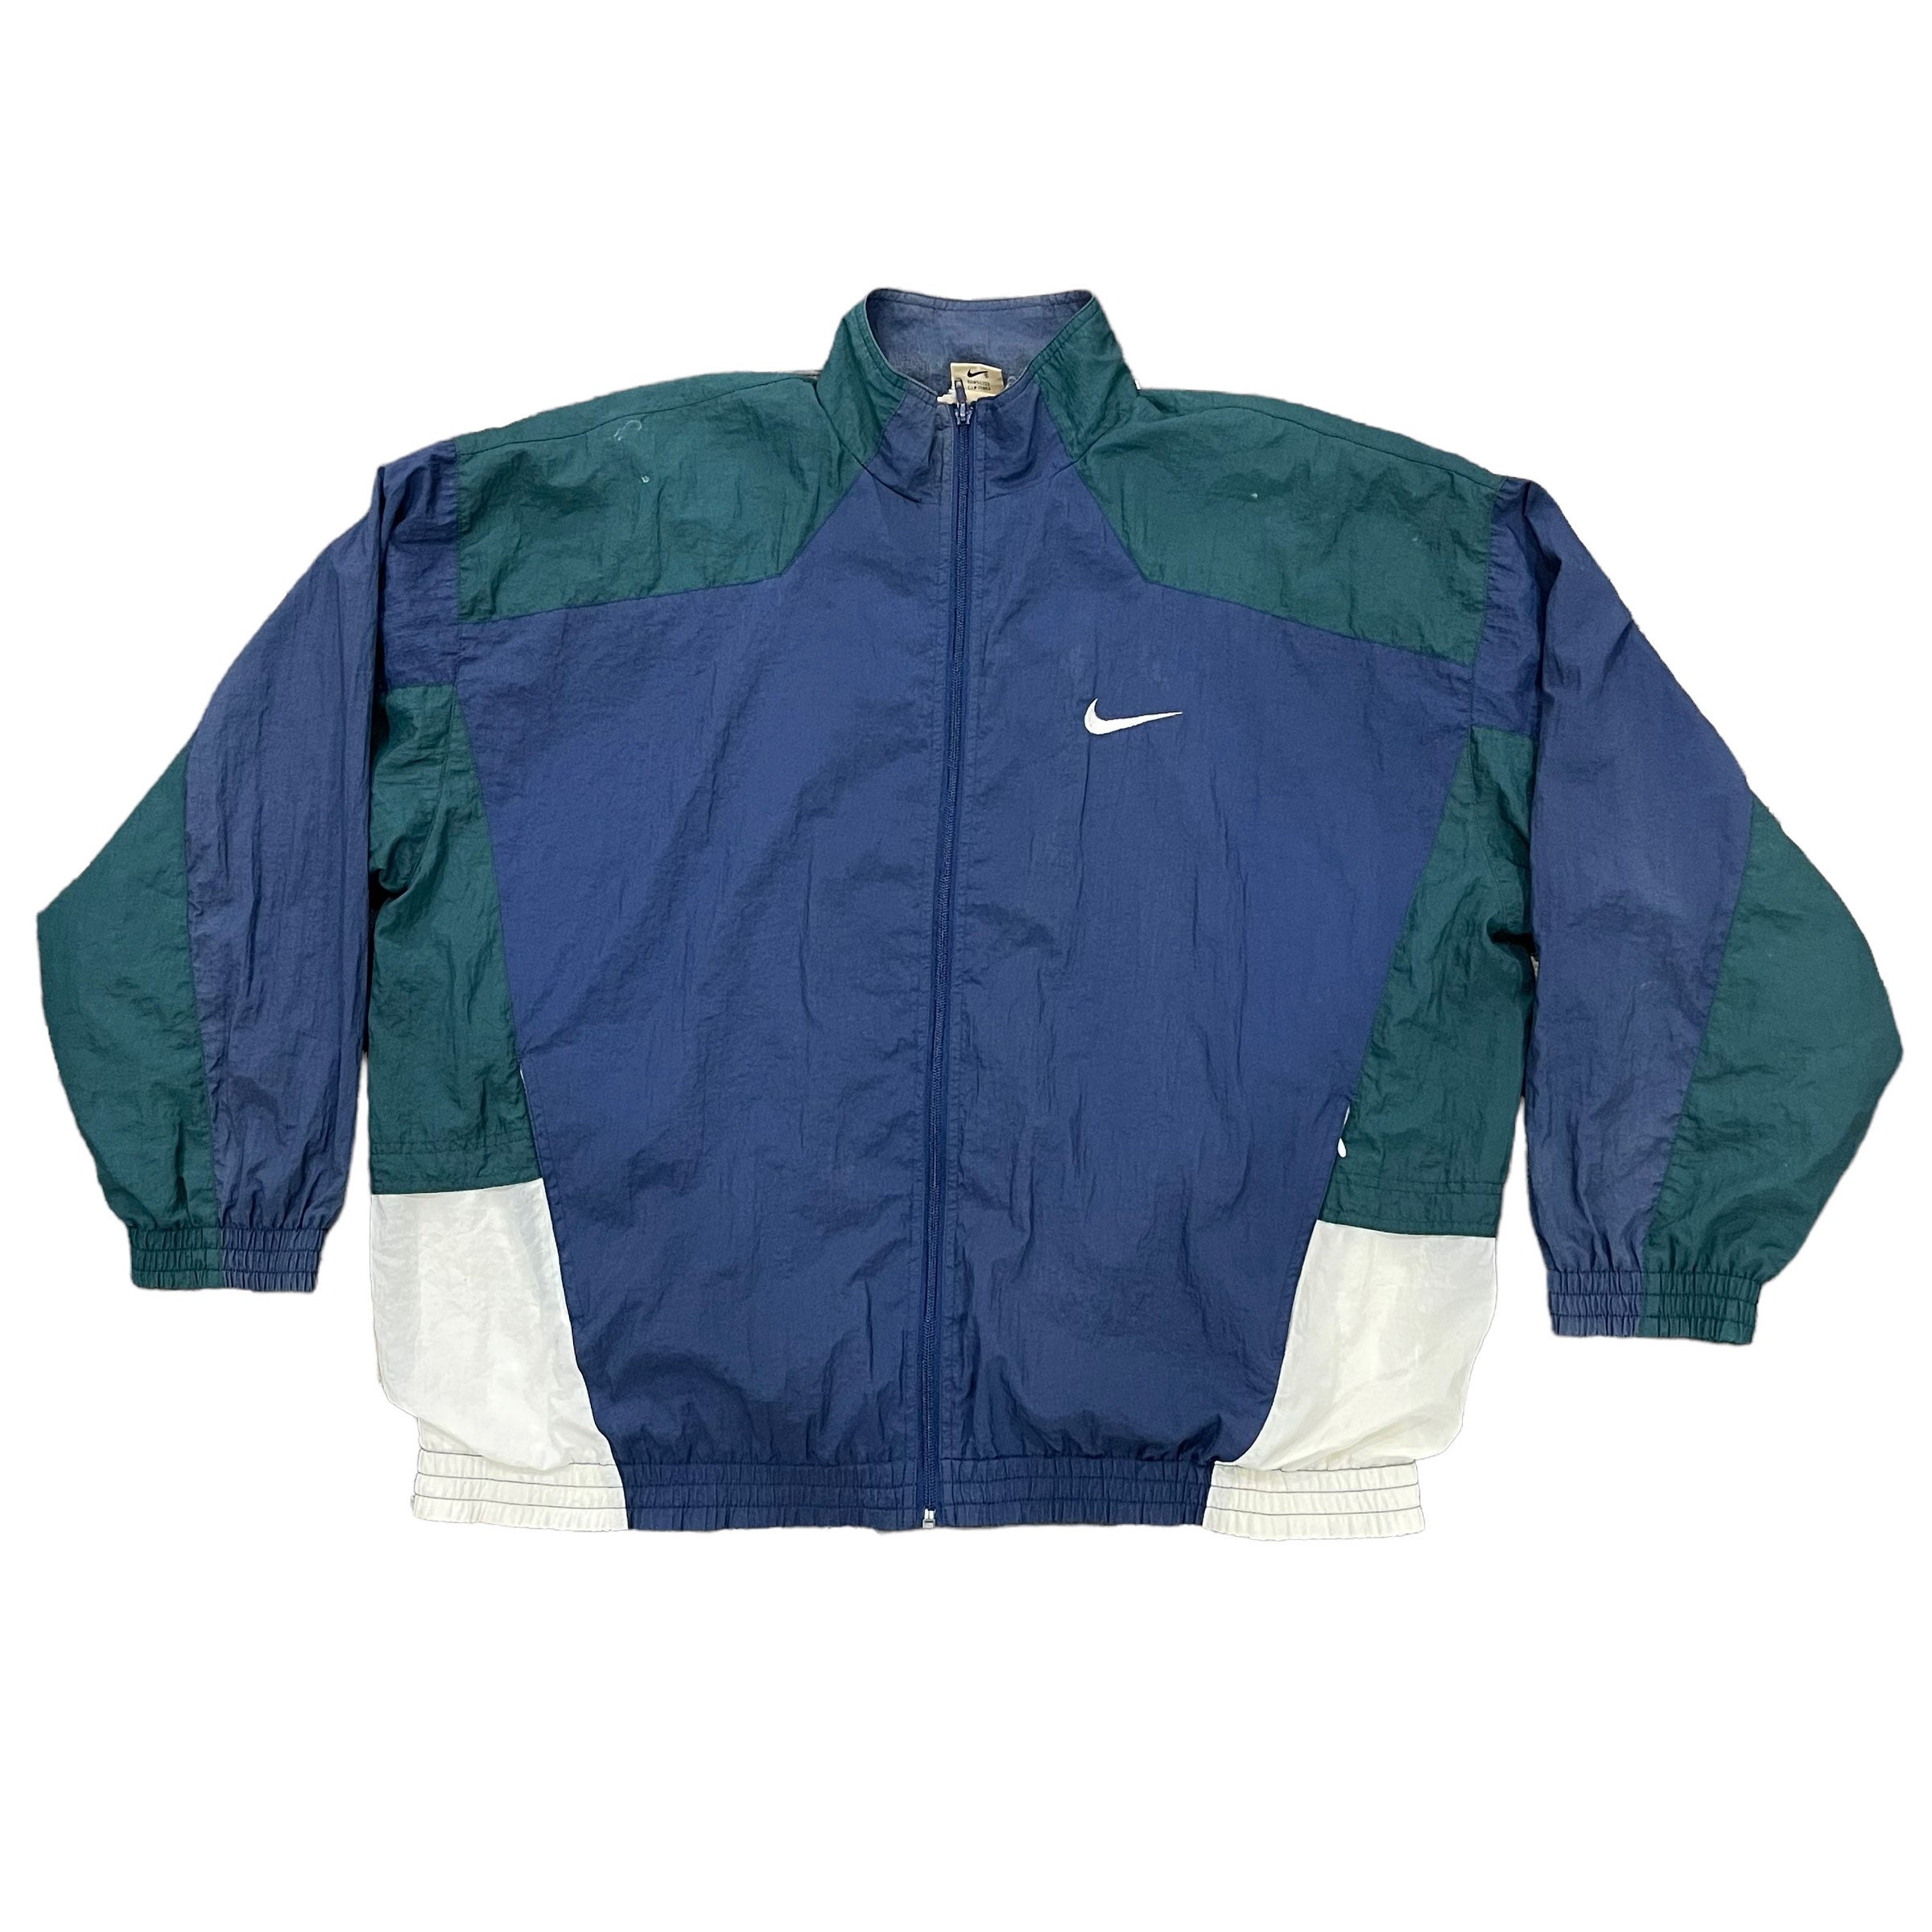 ineffektiv lommelygter tæmme Vintage Nike Jacket - Etsy